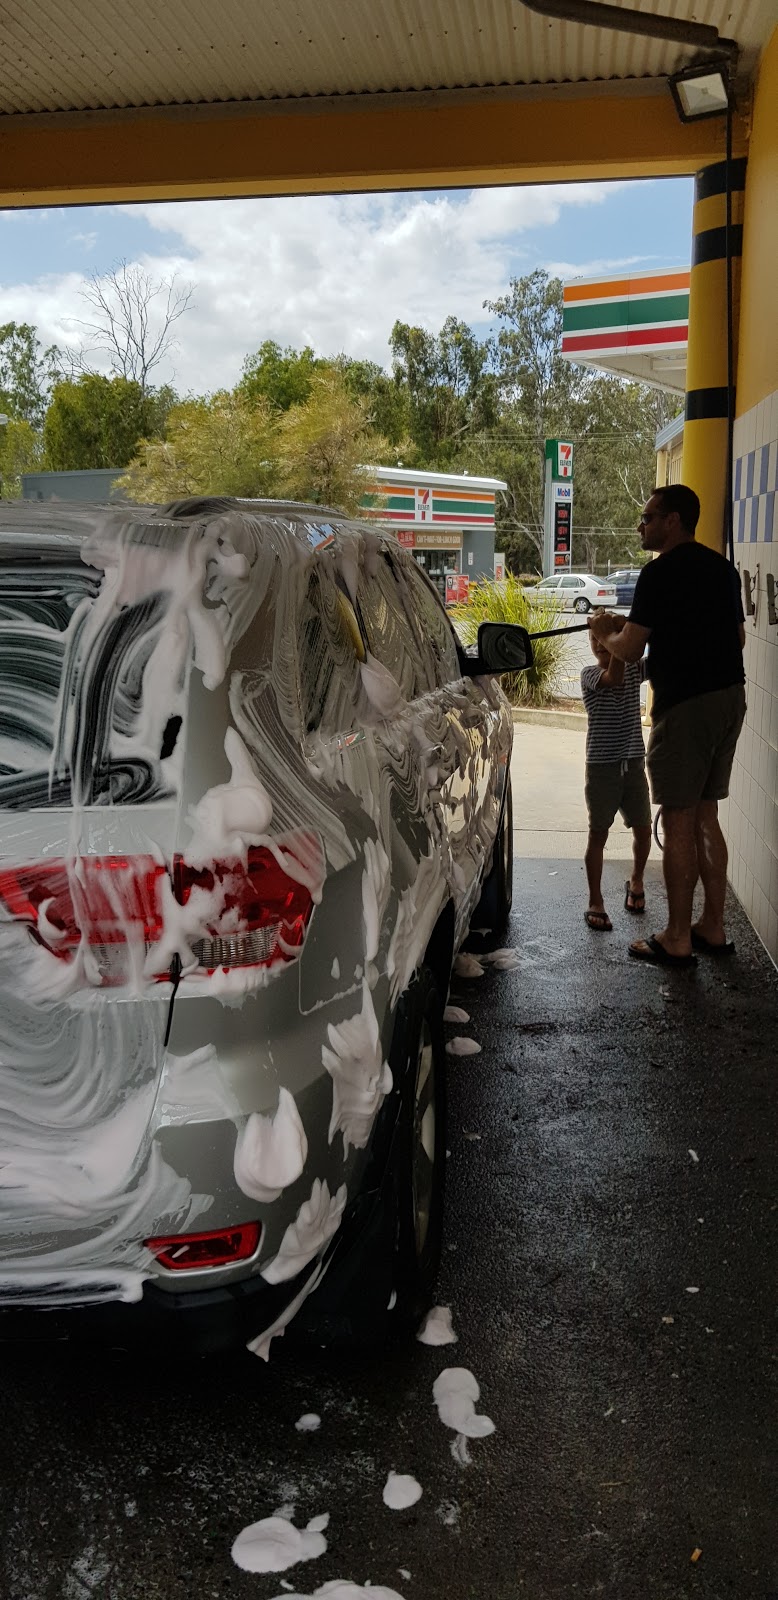 Deagon Car and Dog Wash | car wash | 11 Depot Rd, Deagon QLD 4017, Australia | 0429443519 OR +61 429 443 519